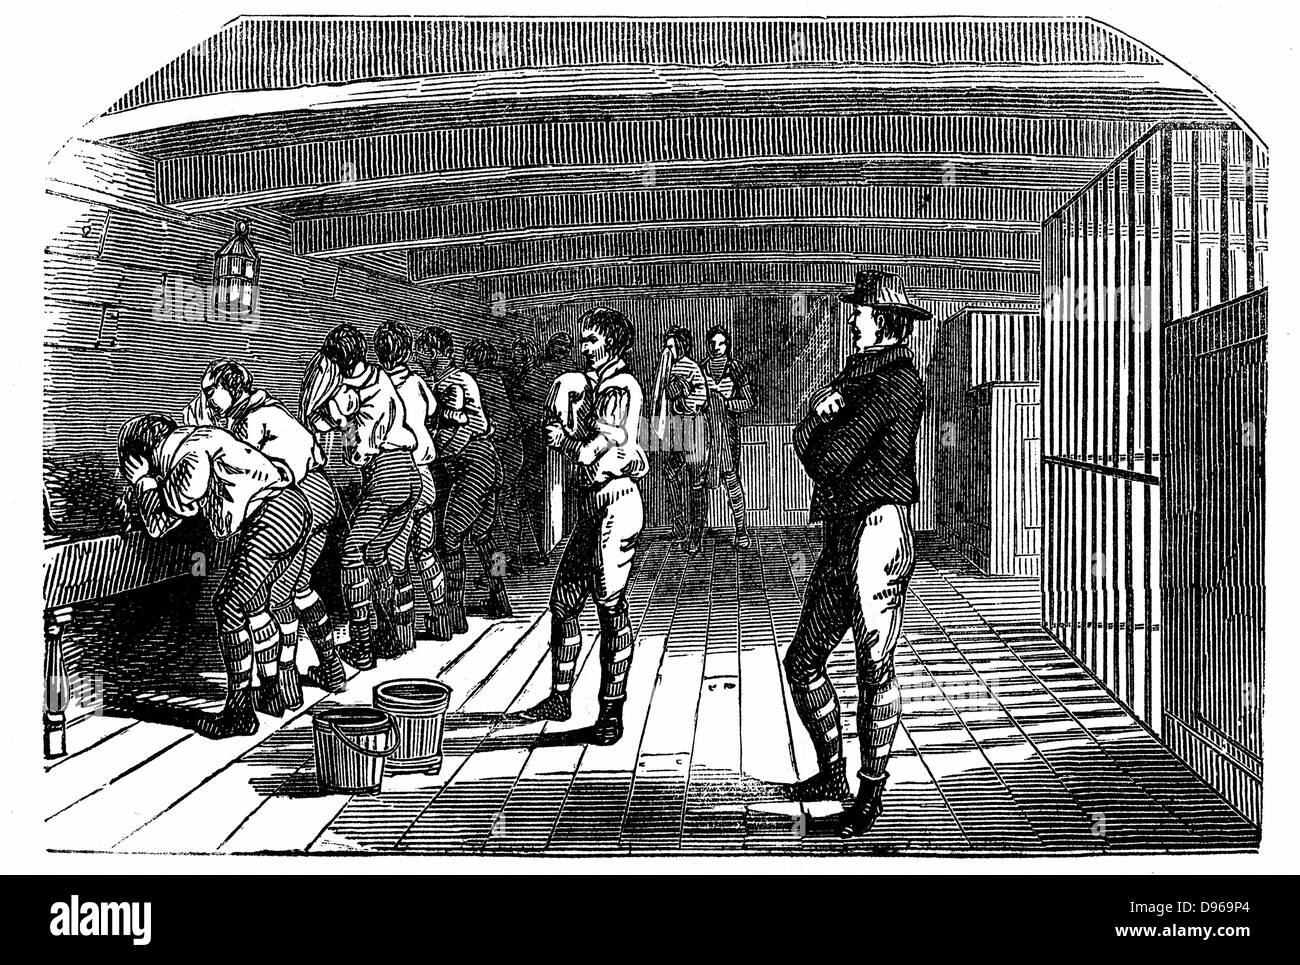 Carcasses de prison : Warder regardant des prisonniers dans les toilettes à bord de condamner un hulk à Woolwich. Ce hulk a tenu 600 et a été un intermédiaire entre une prison ordinaire de confinement ou de transport. Les prisonniers étaient utilisés comme ouvriers dans les chantiers navals. Barges (Offres) étaient généralement vieux navires qui n'étaient plus aptes à partir de 'l'Illustrated London News, 1848. La gravure sur bois Banque D'Images